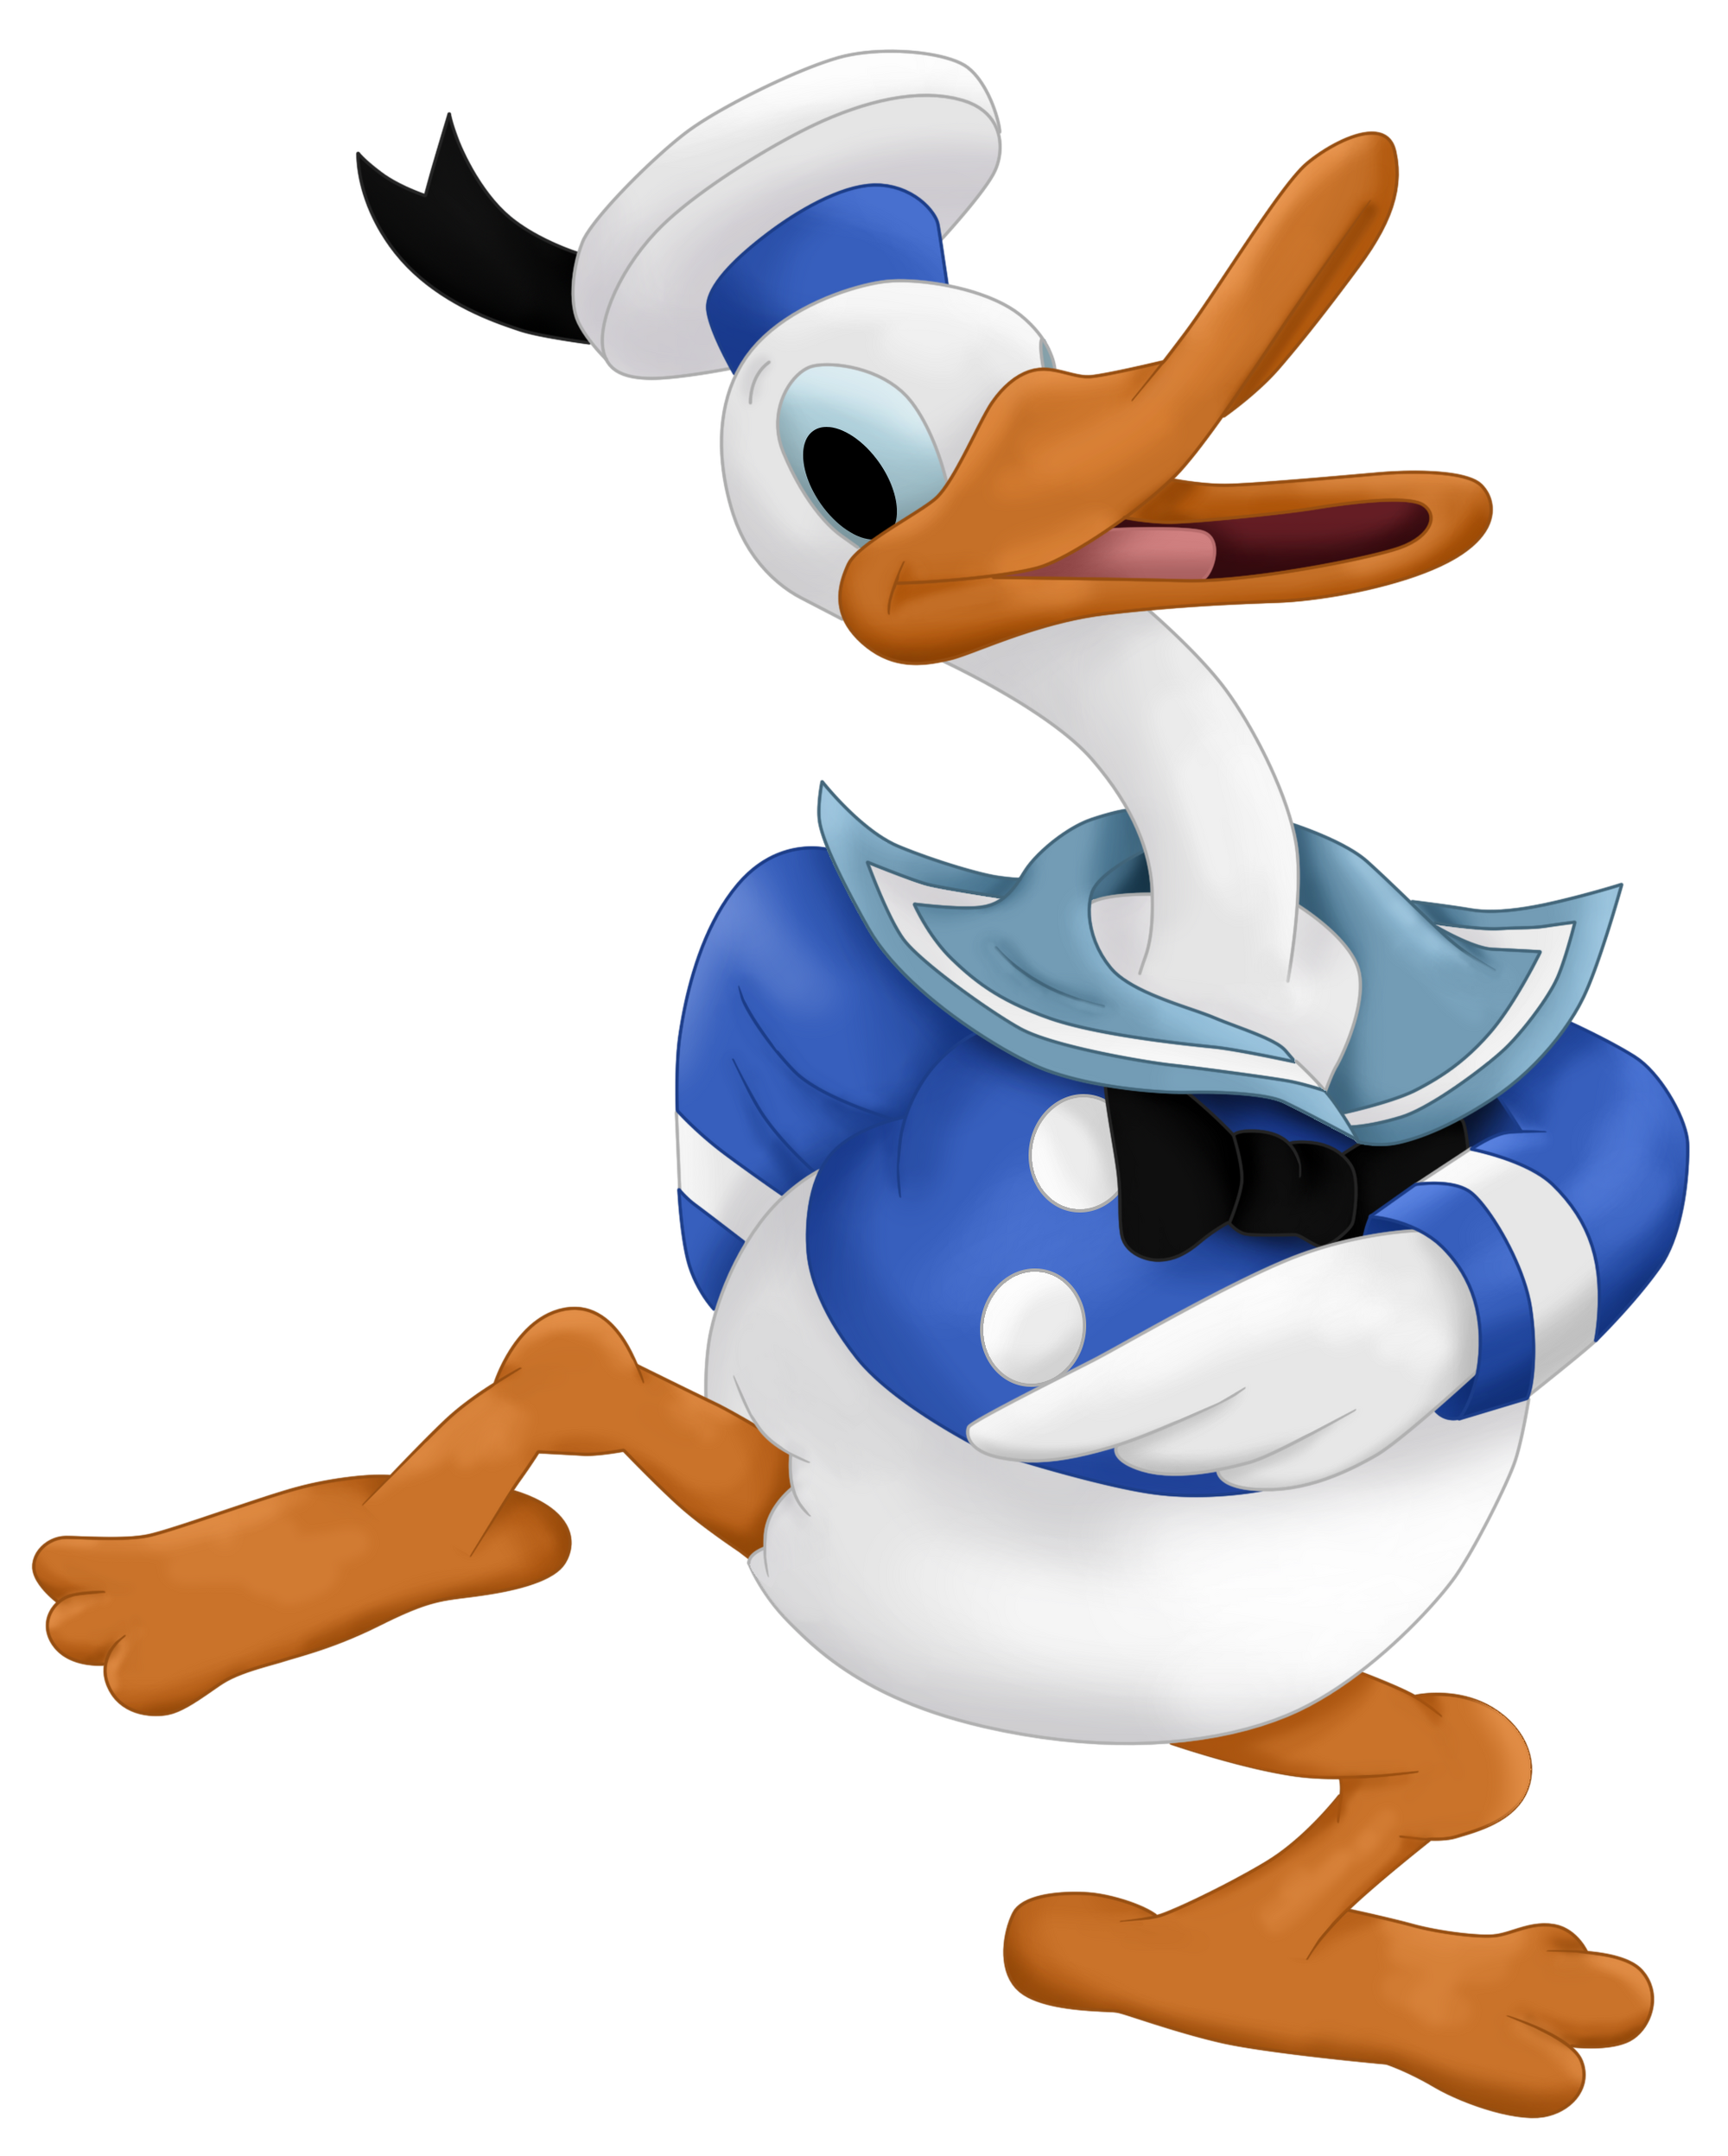 Donald Duckgalería Disney Y Pixar Fandom